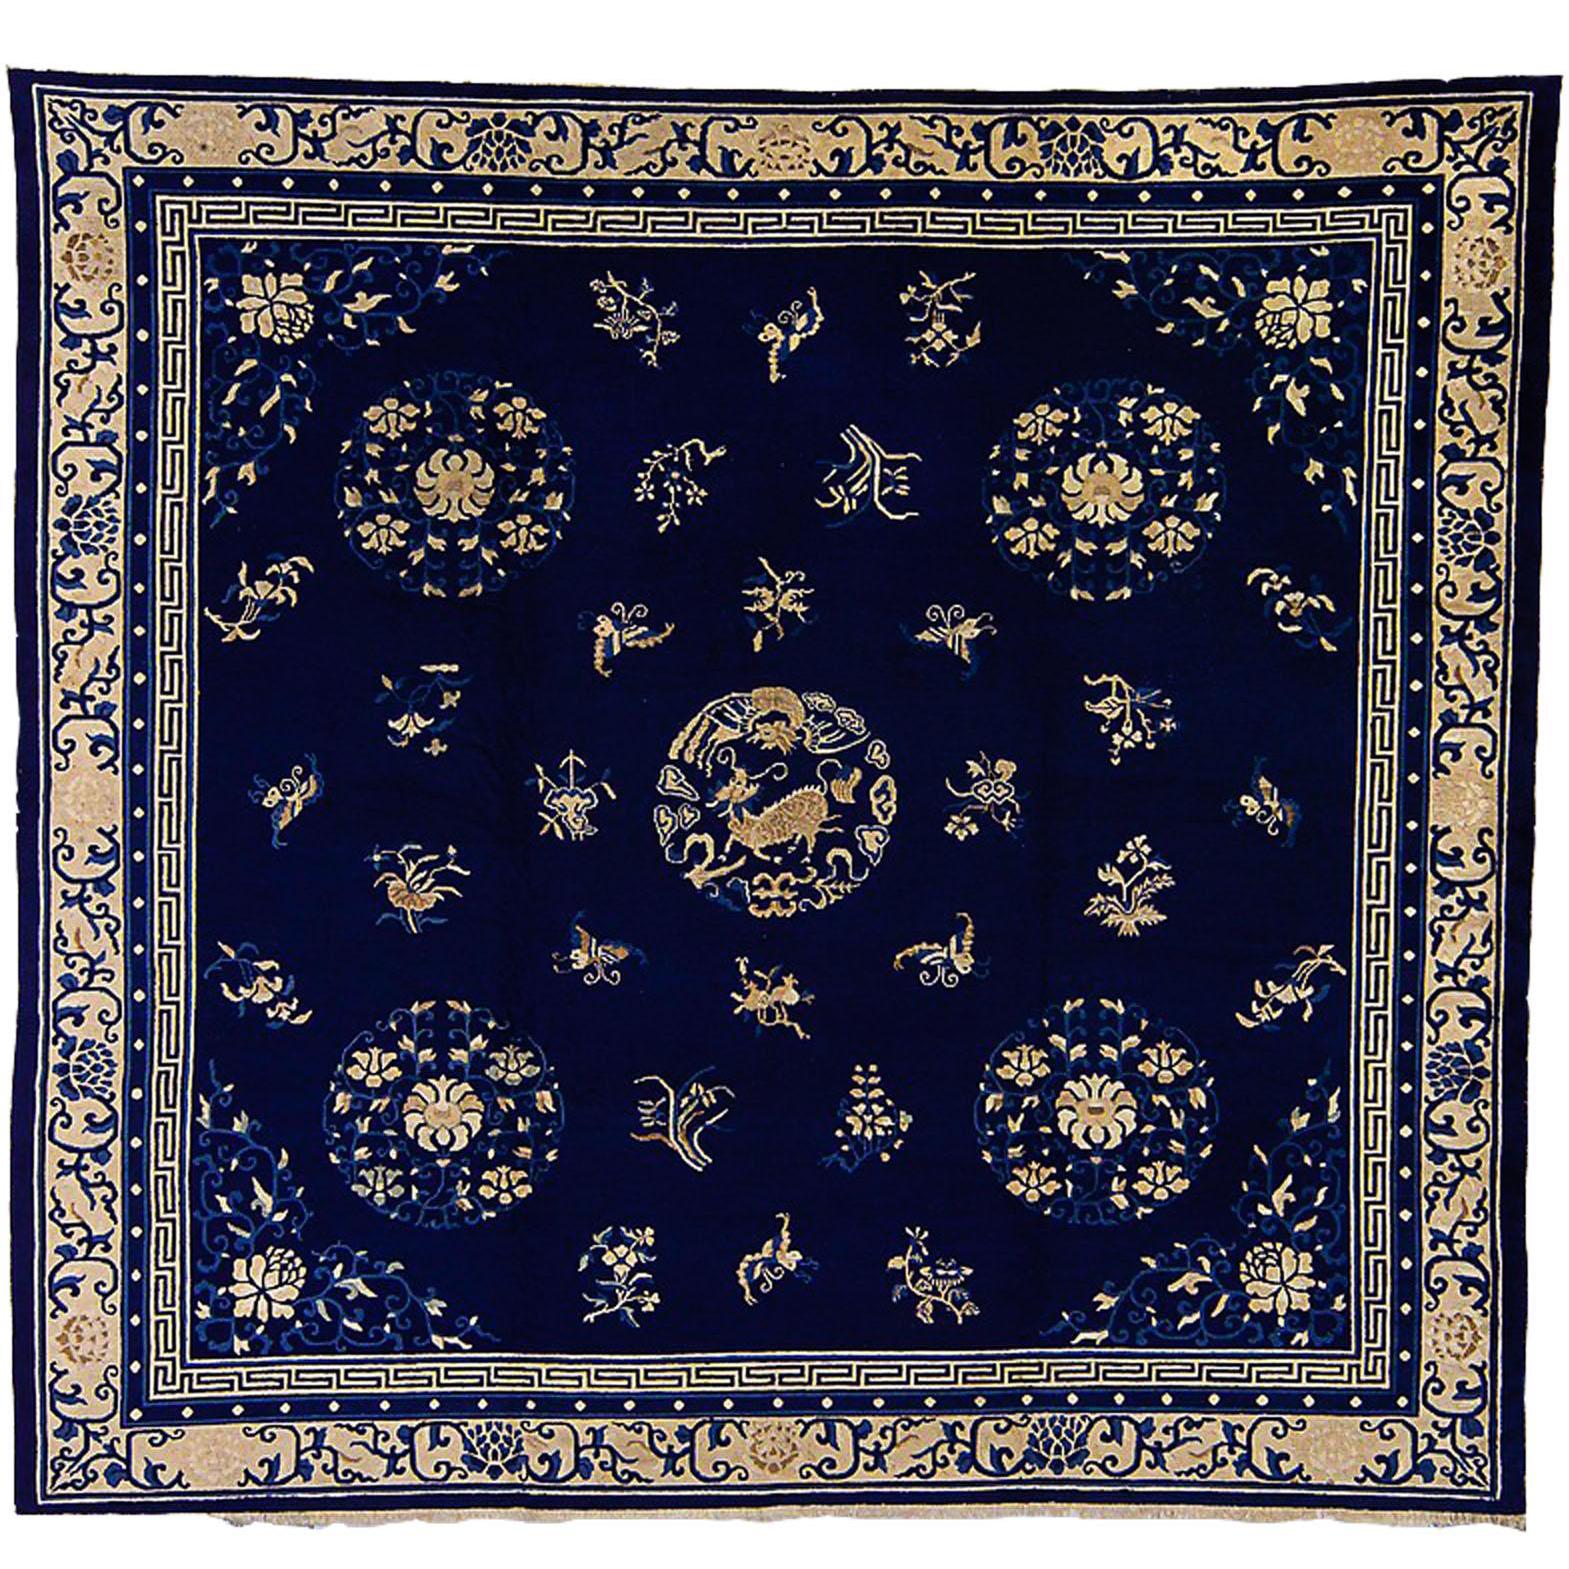 Chinesischer Teppich aus Wolle mit blau-weißem Medaillon und Tiermotiv aus dem 19. Jahrhundert, um 1870 